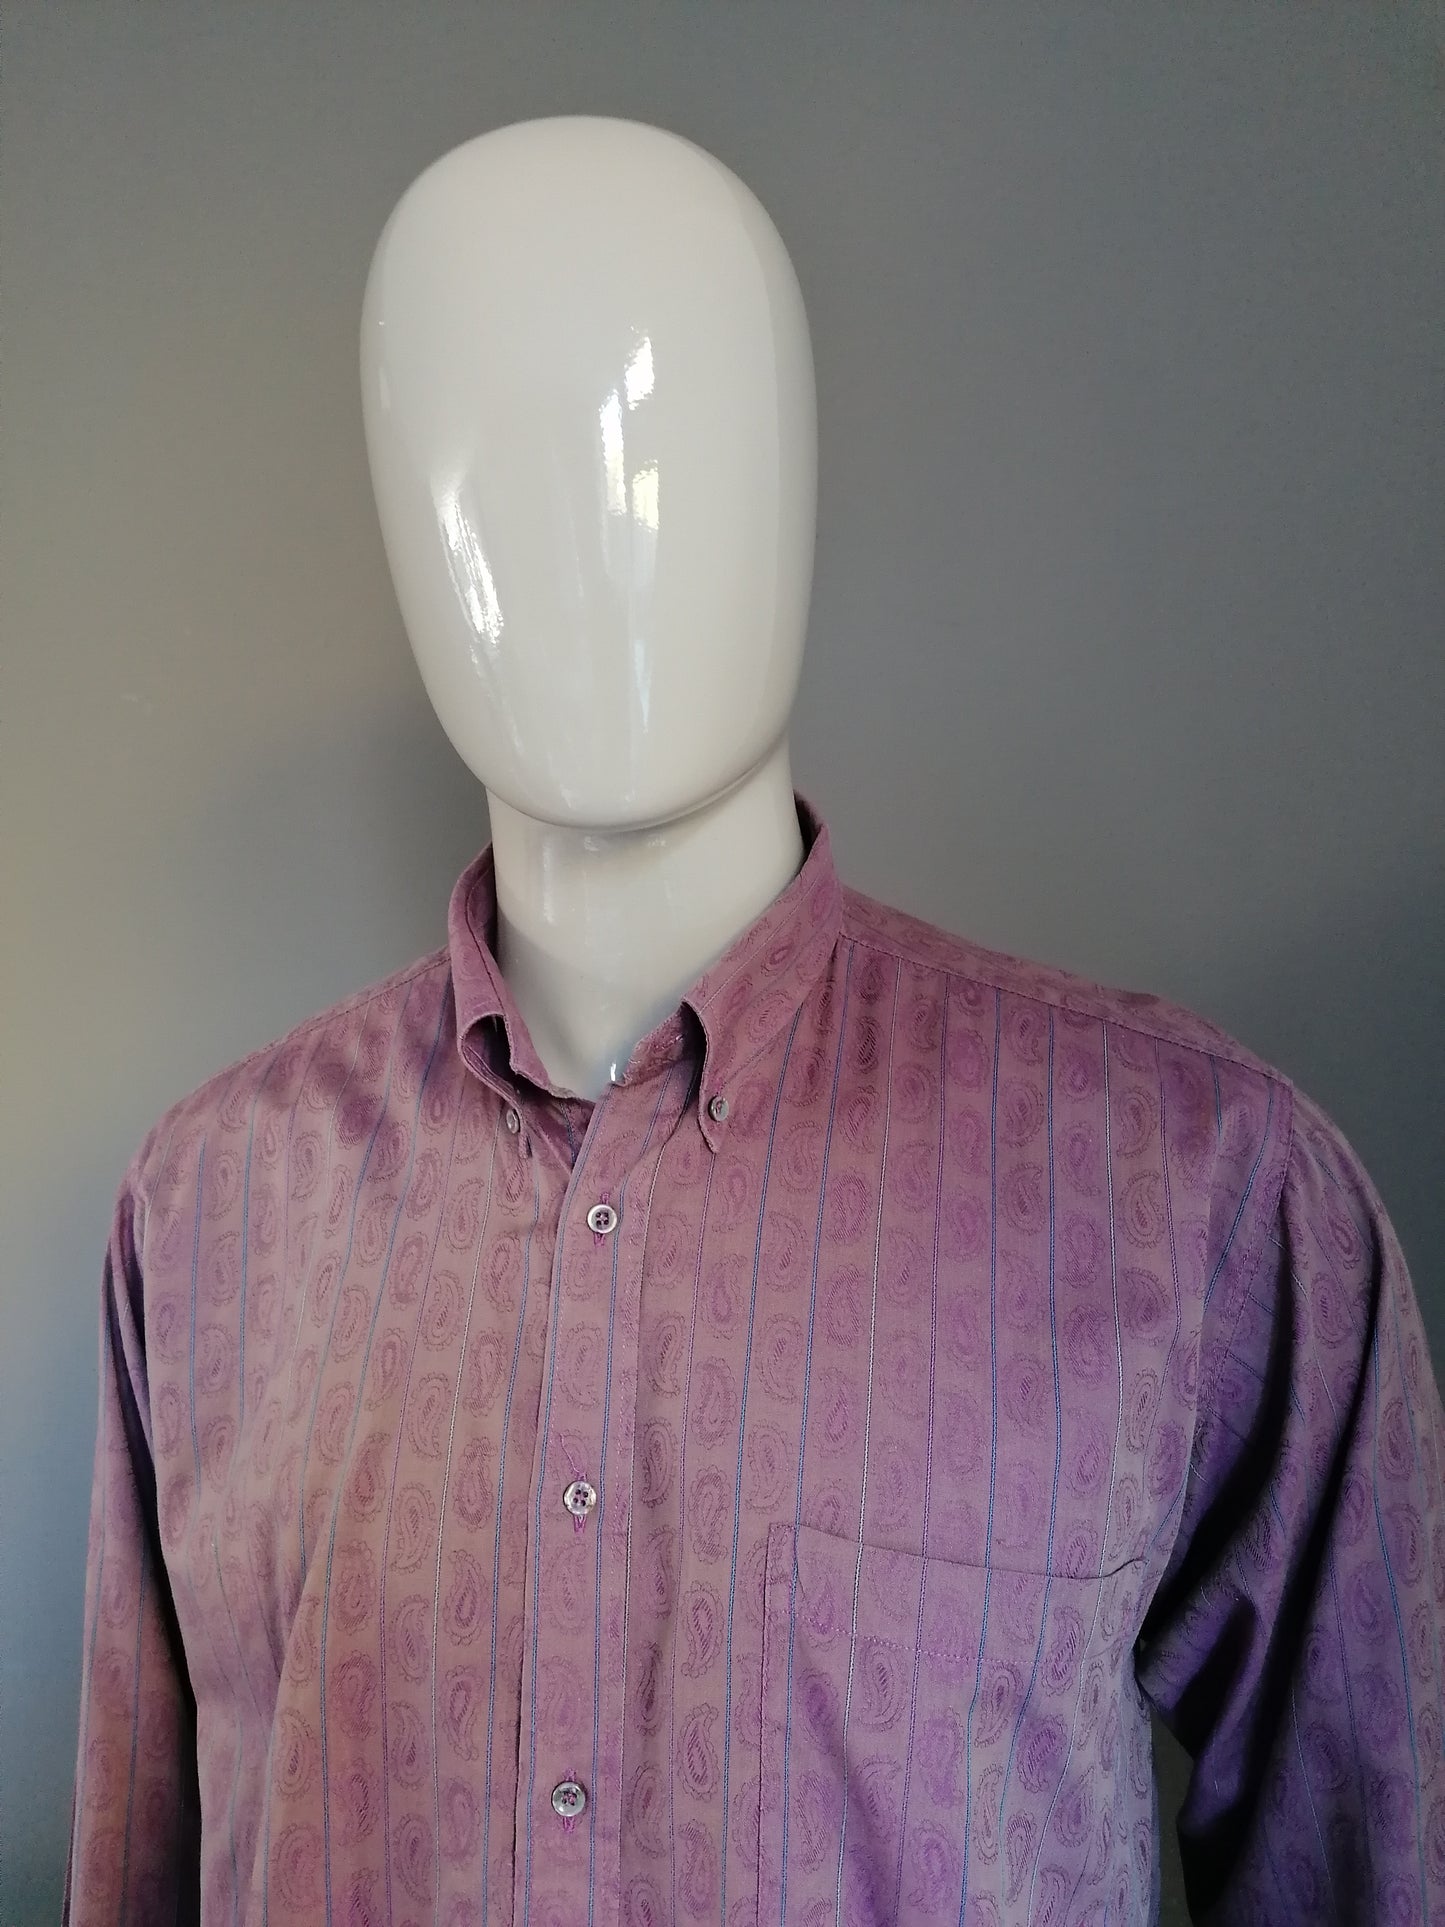 Camisa de la vendimia. Motivo púrpura con brillo metálico. Tamaño XL.